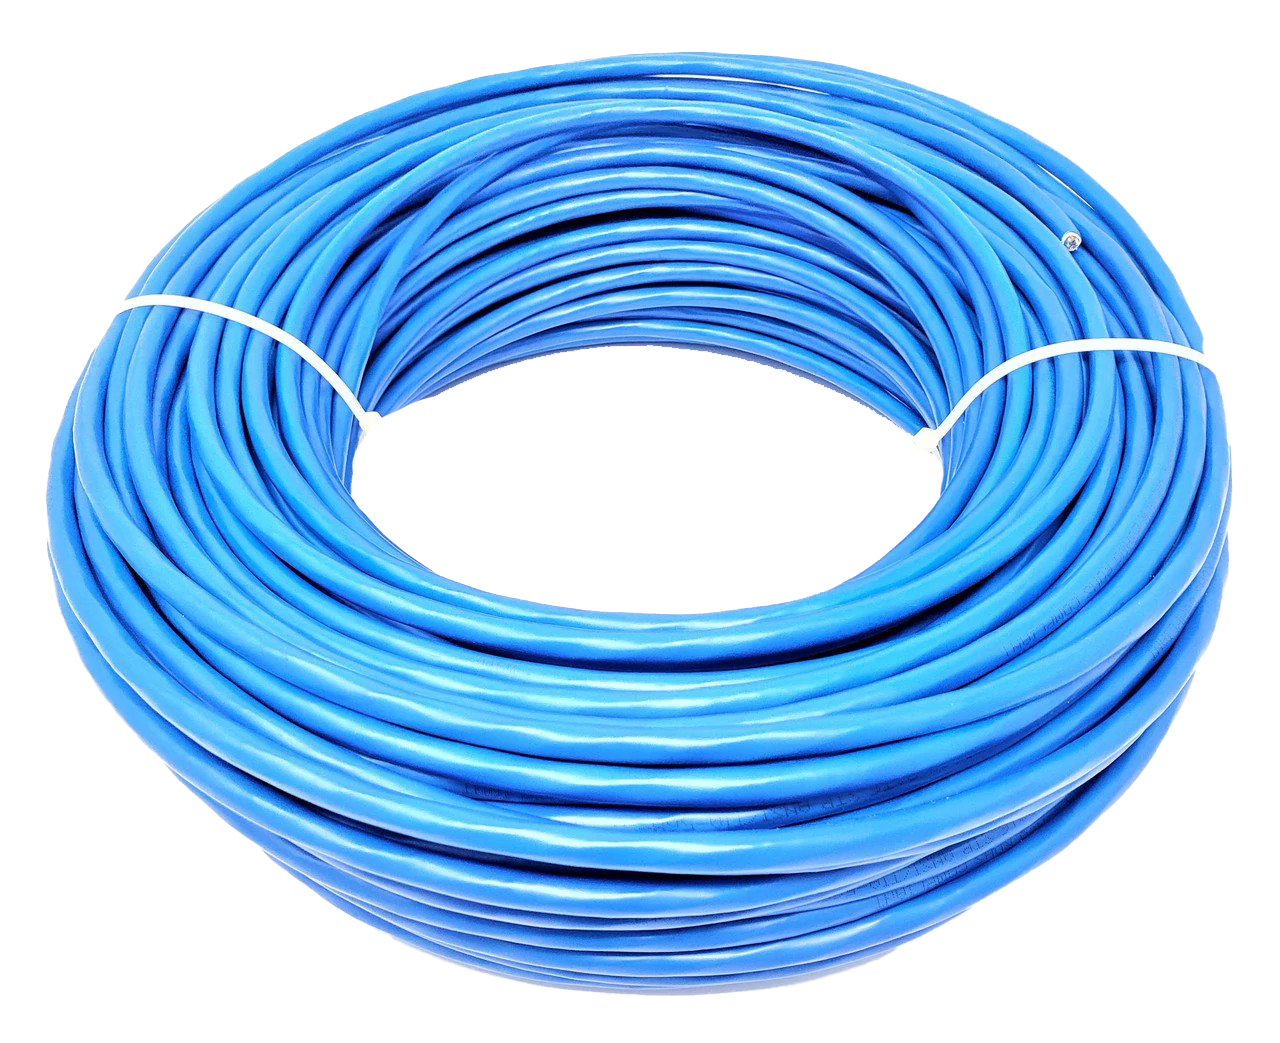 Immagine Trasparente del cavo Ethernet blu